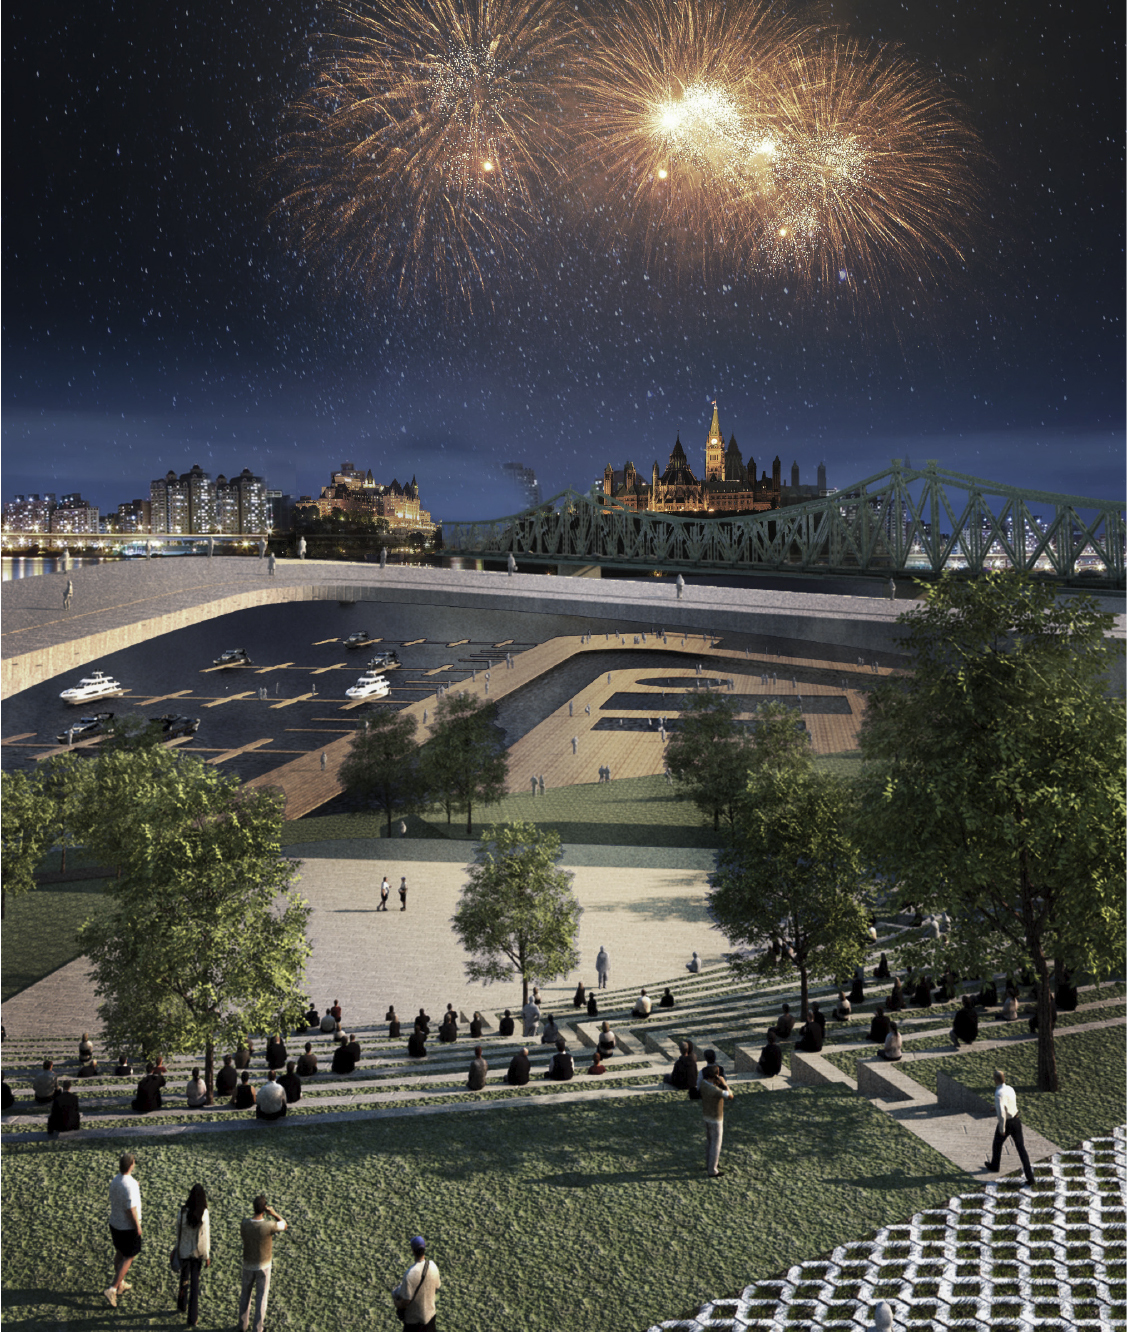 Des personnes sont assises dans l’amphithéâtre du parc Jacques-Cartier à côté de la marina. Le pont Alexandra et la colline du Parlement sont en arrière-plan. Des feux d’artifice illuminent le ciel.